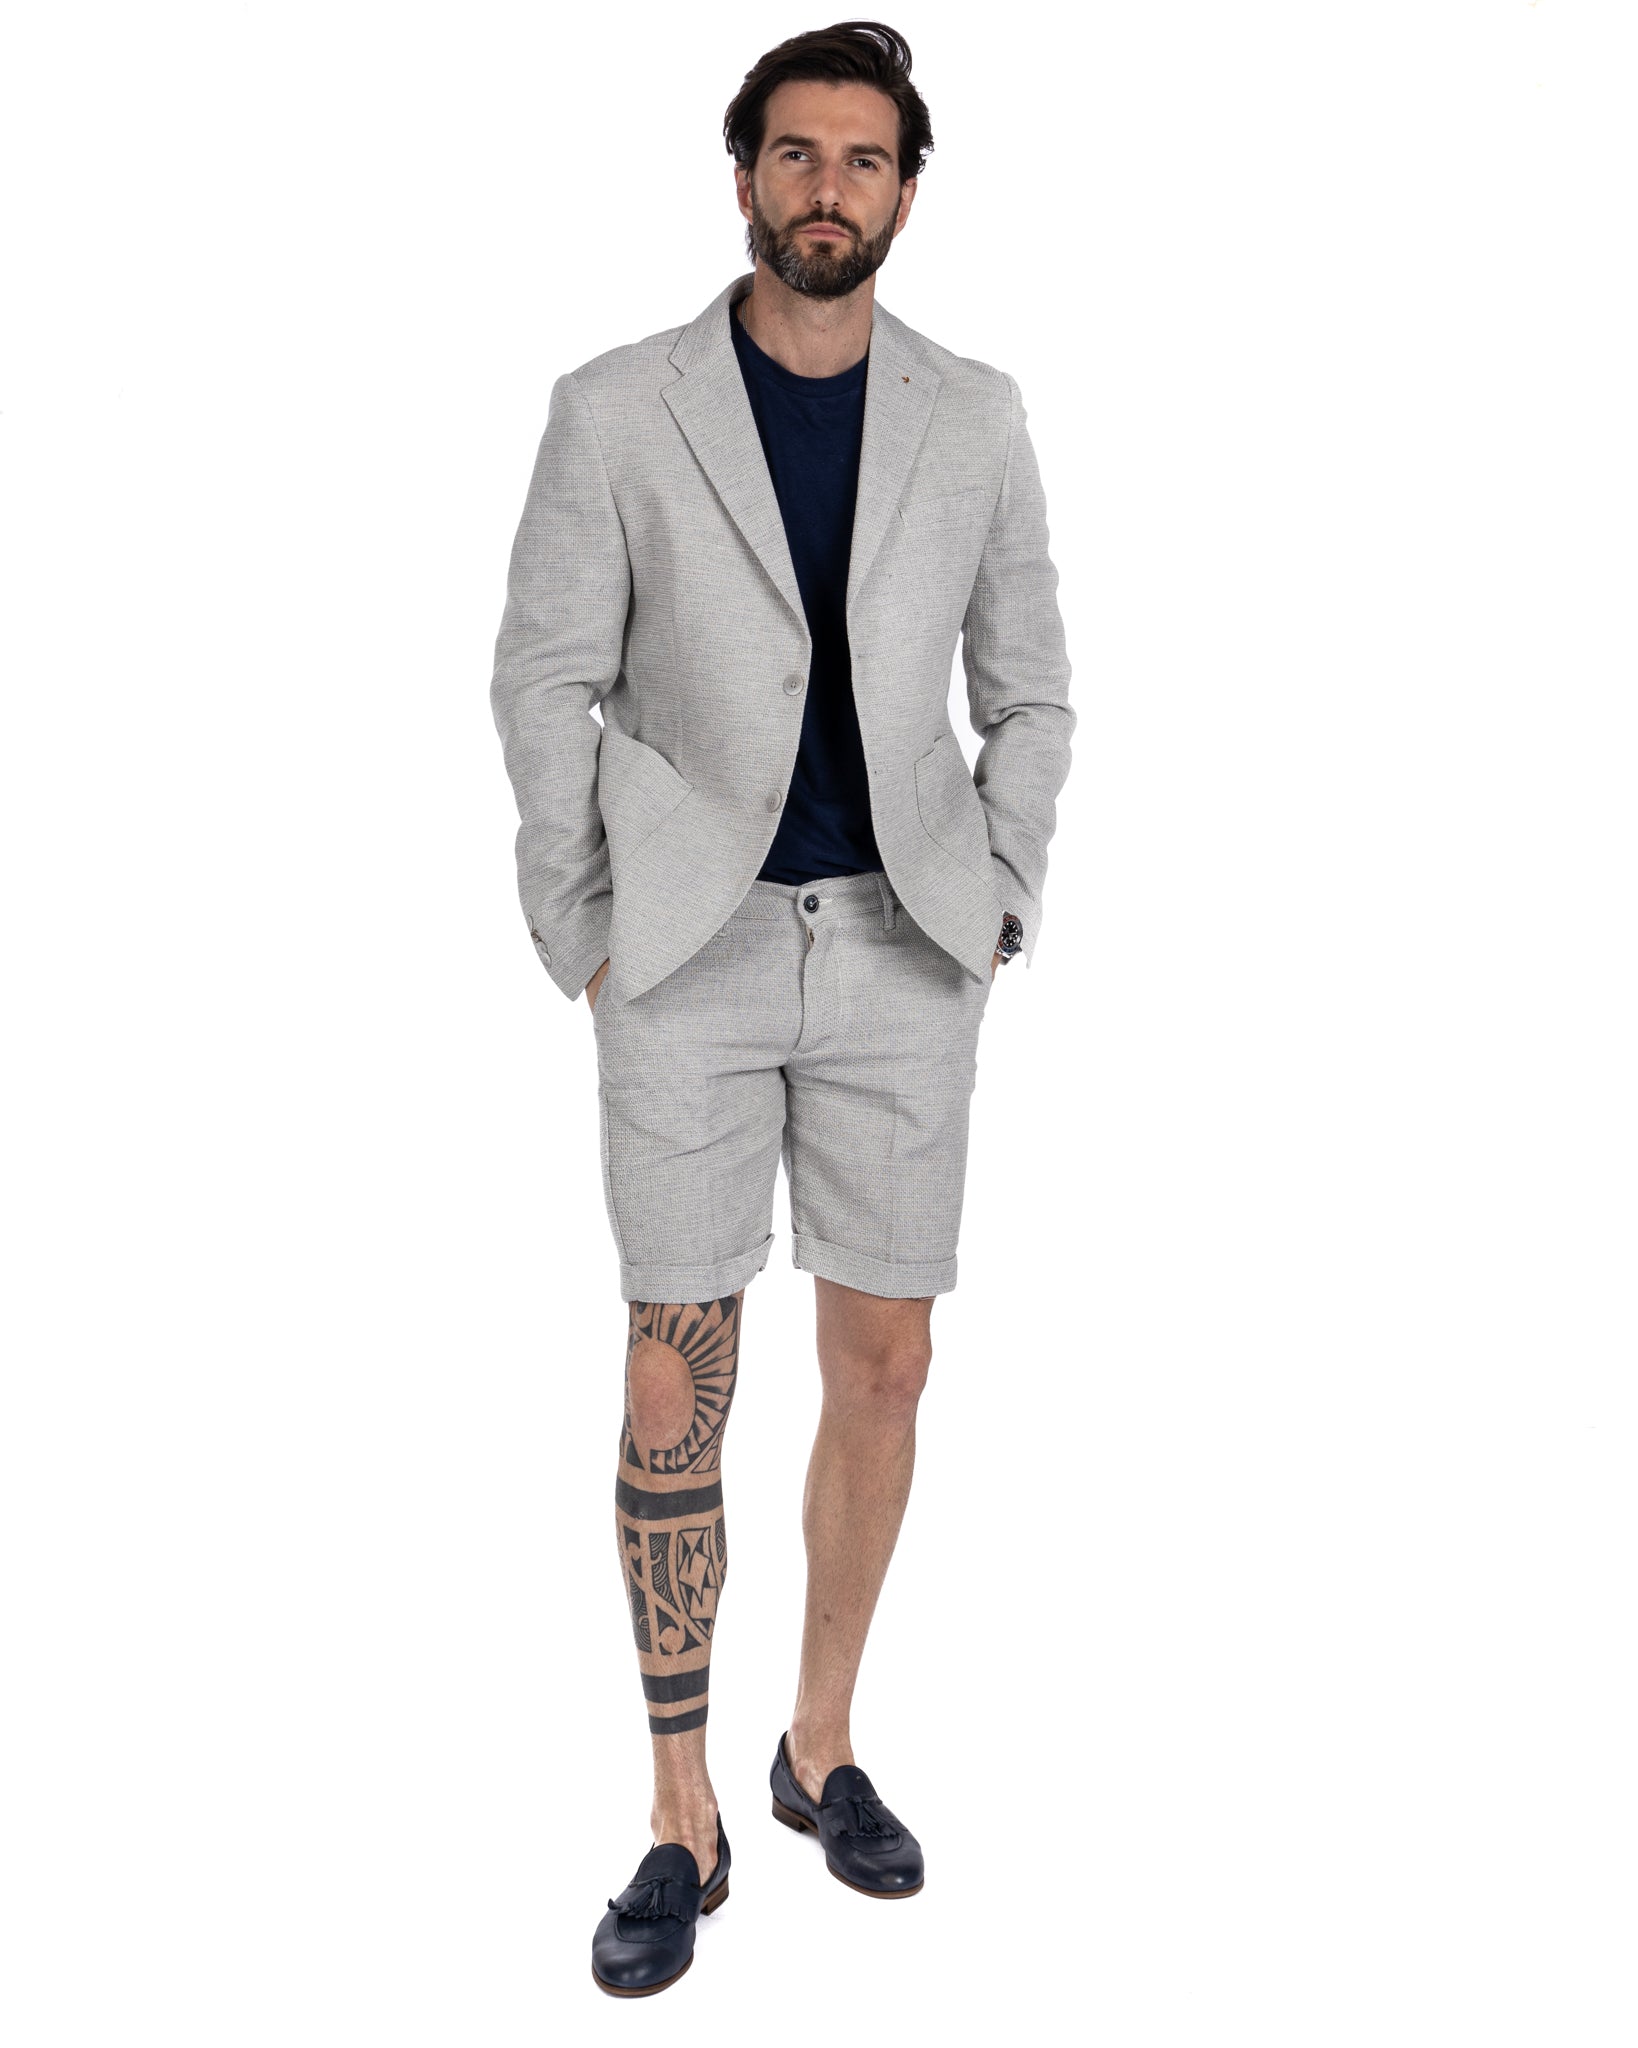 Leuca - blue linen and cotton Bermuda shorts